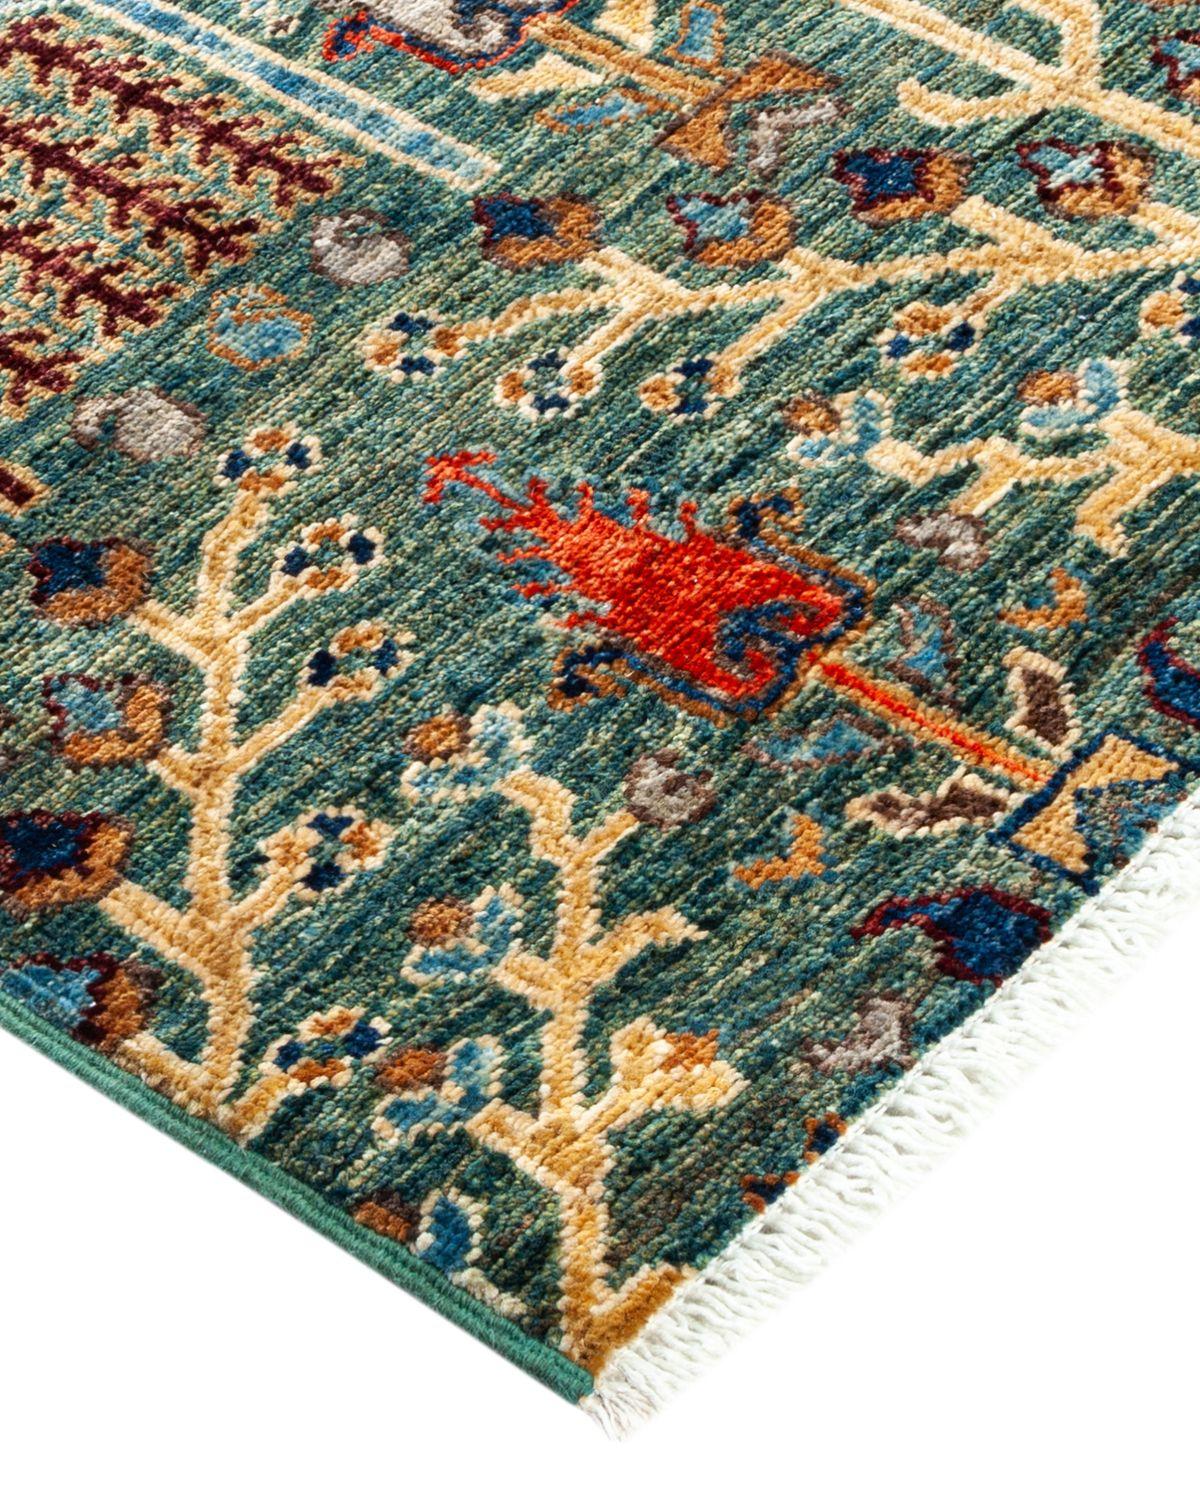 La ricca tradizione tessile dell'Africa occidentale ha ispirato la collezione di tappeti annodati a mano Tribal. Incorporando una serie di motivi geometrici, in palette che vanno dalla terra alla vivacità, questi tappeti danno un senso di energia e